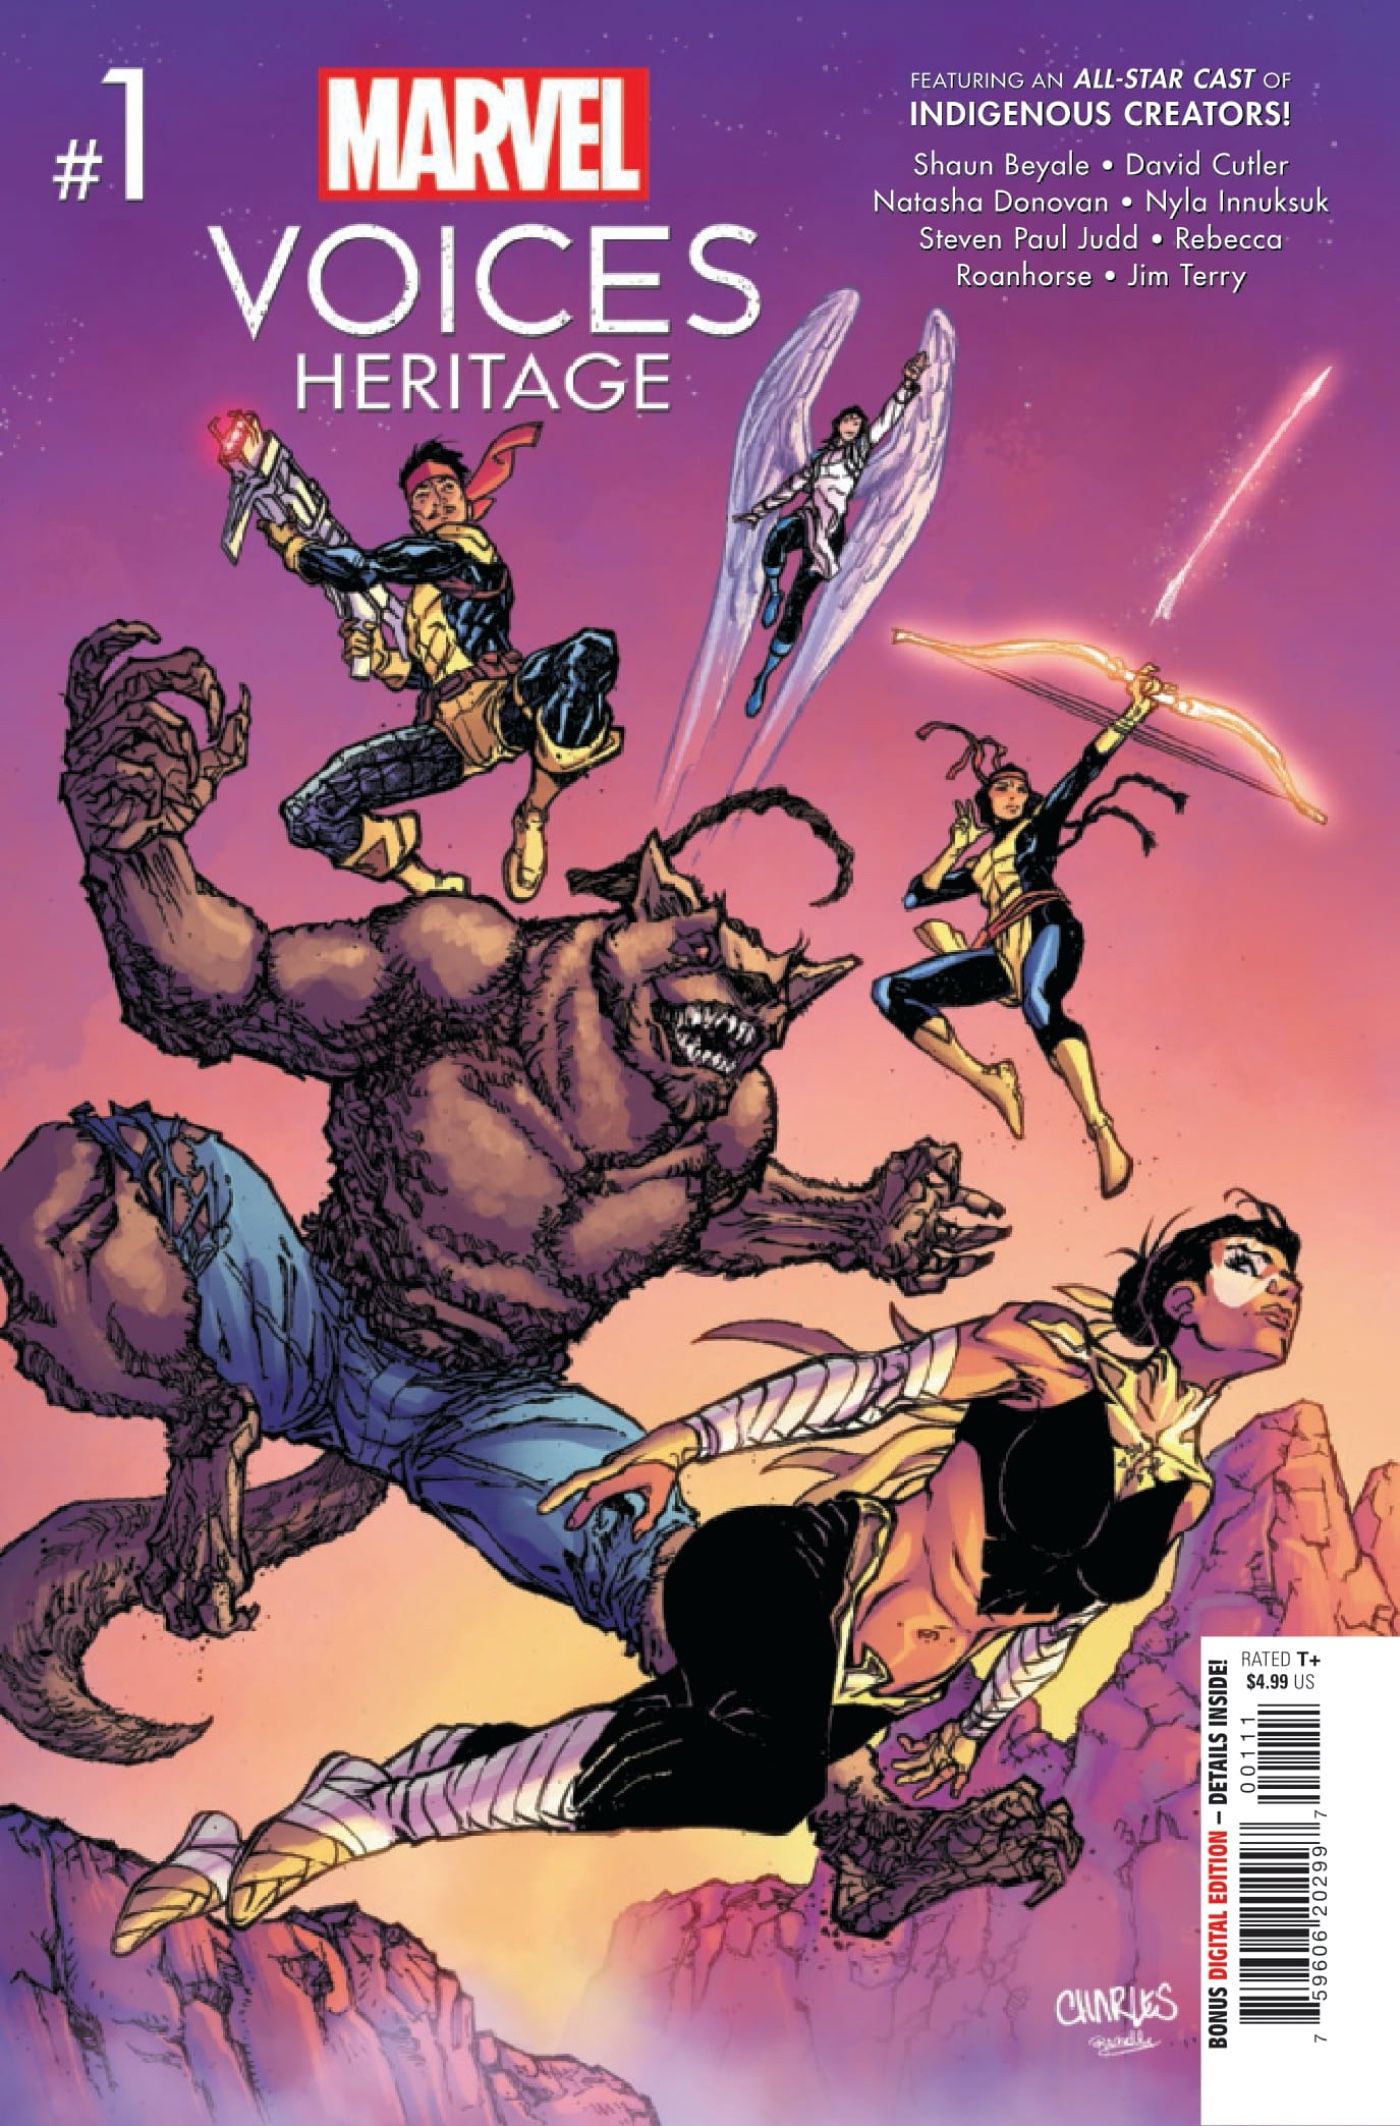 Indigenous Mutants Unite In Marvel Voices: Heritage Sneak Peek